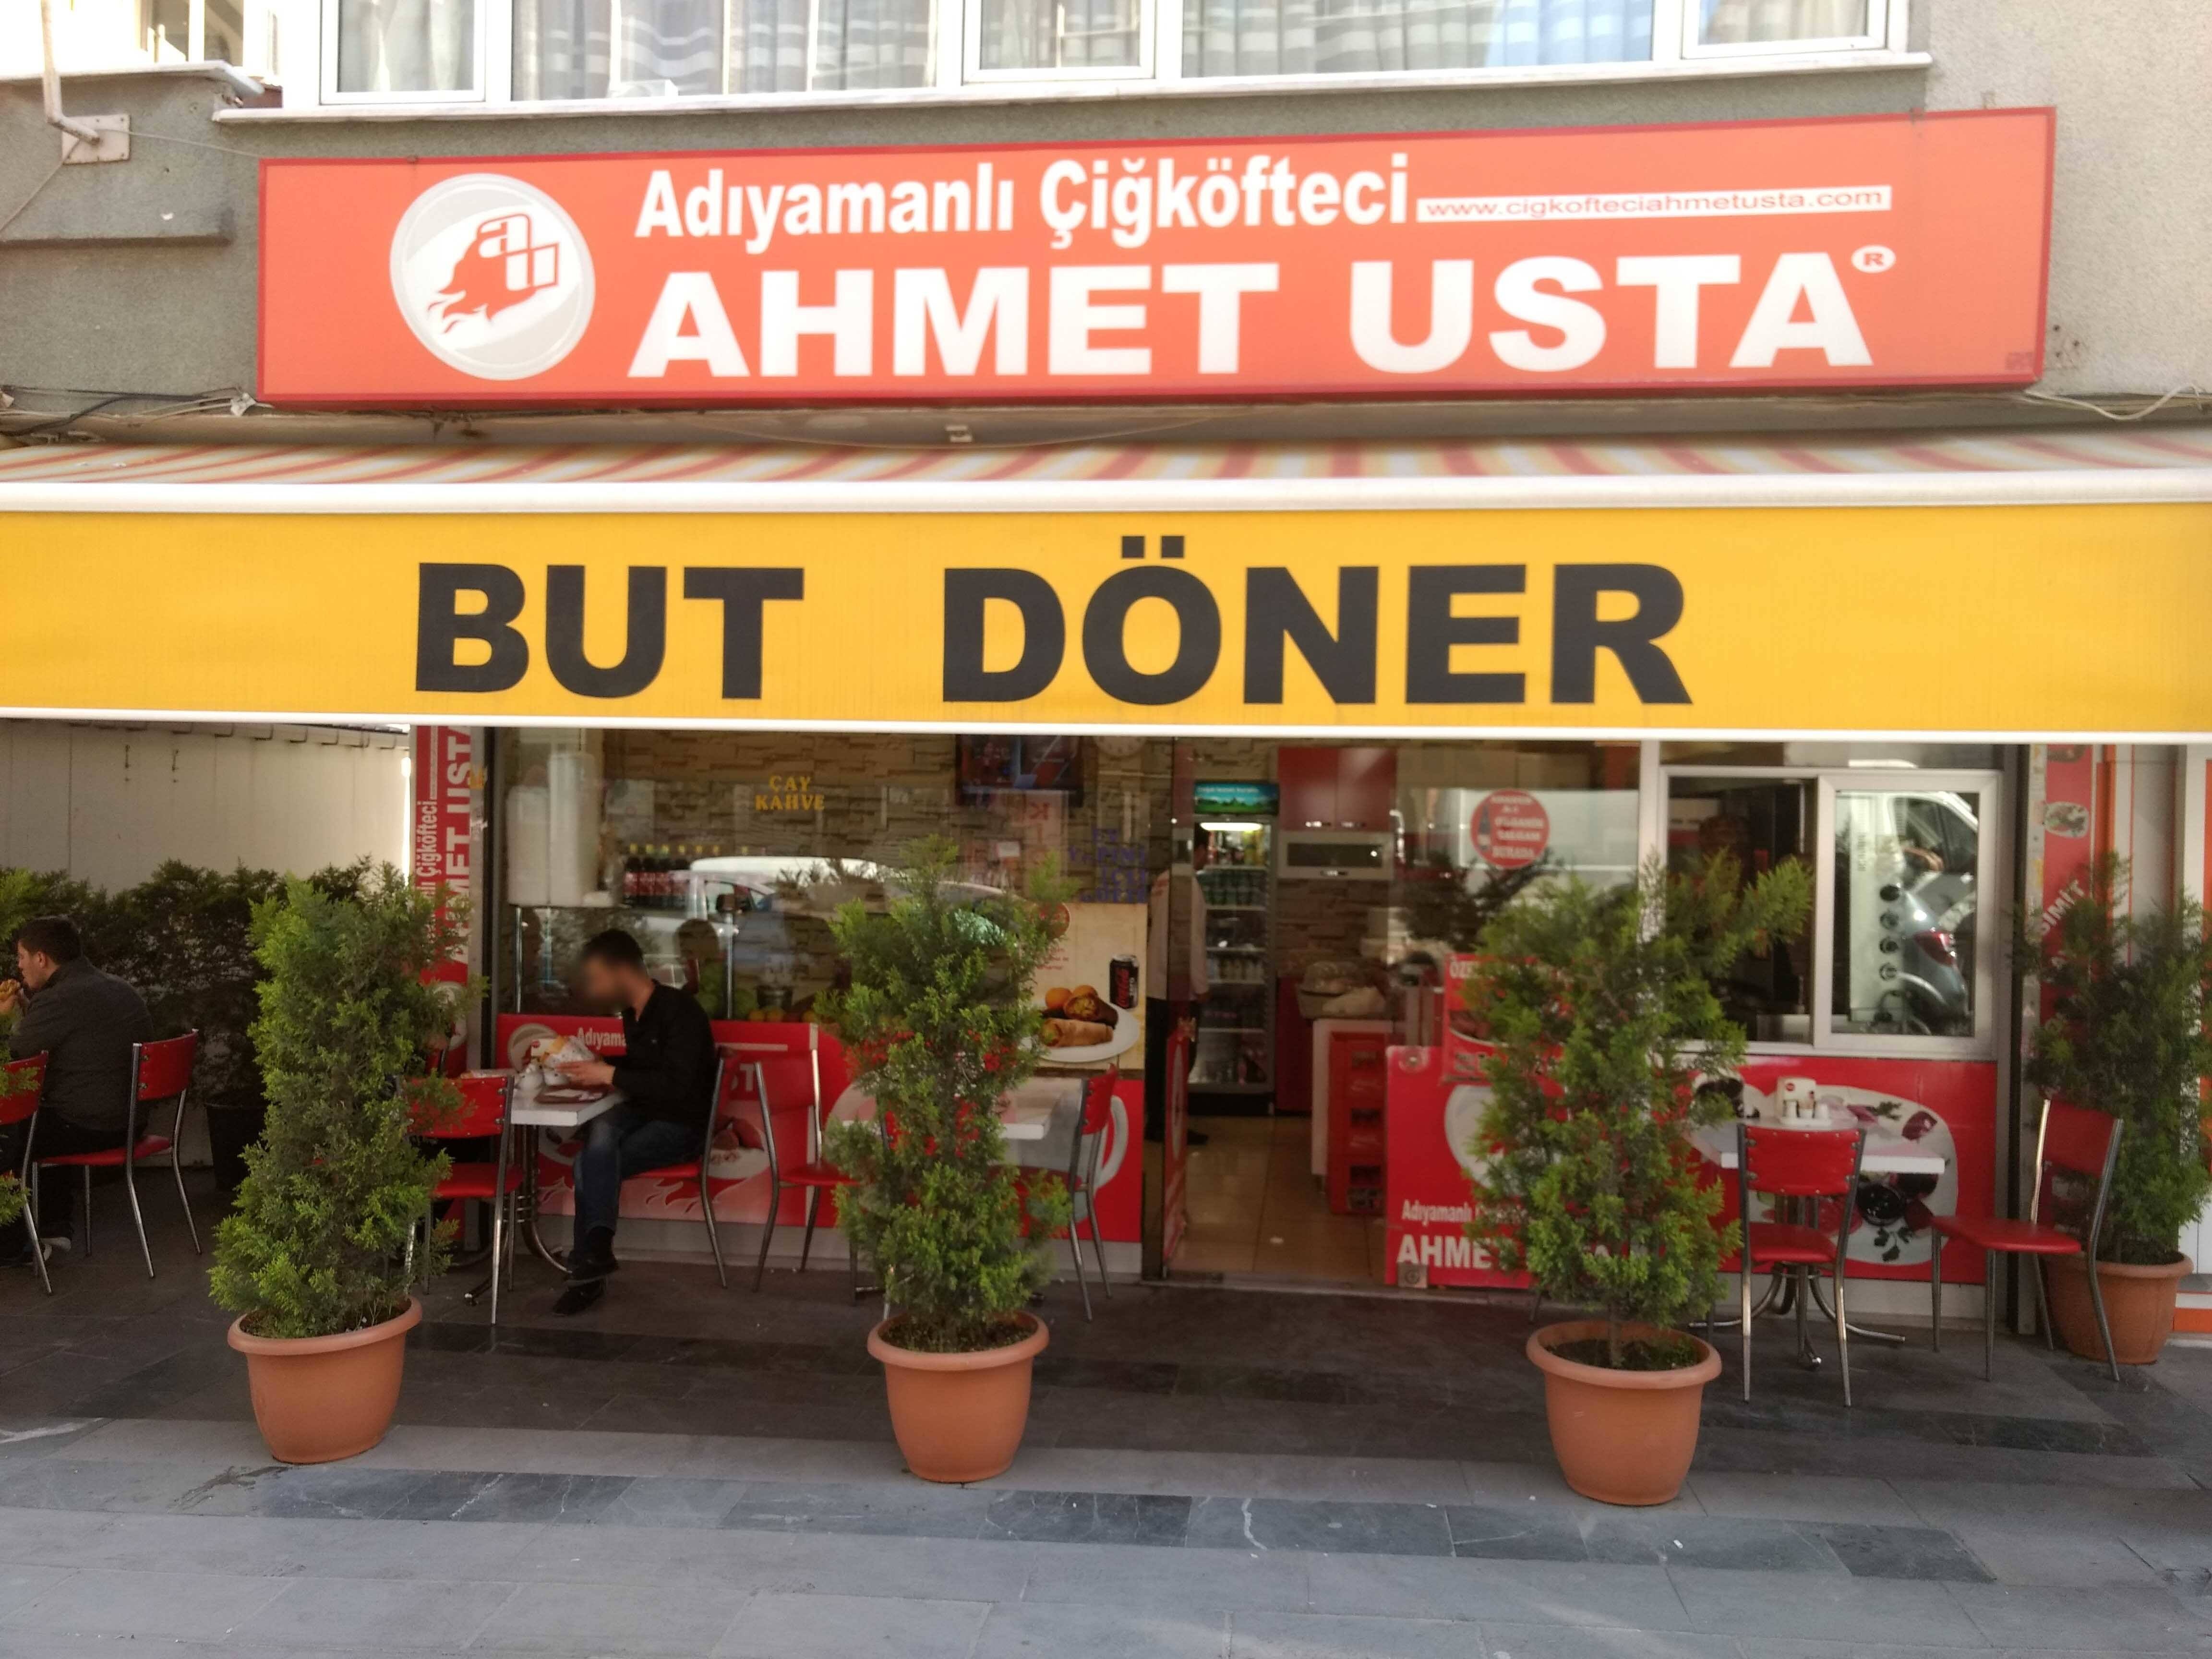 Adiyamanli Cigkofteci Ahmet Usta But Doner Cennet Istanbul